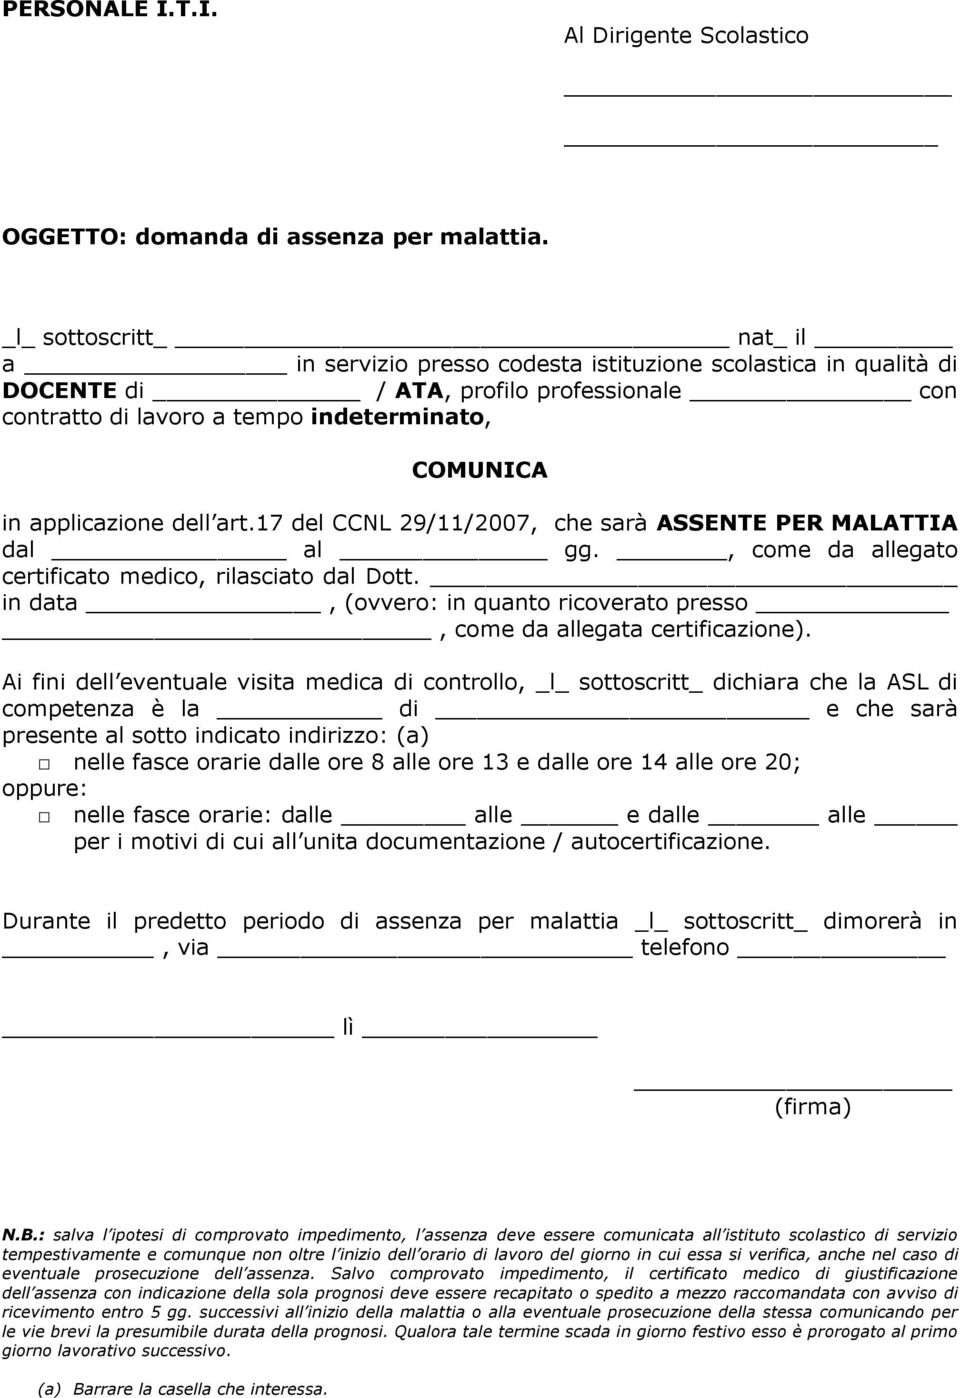 17 del CCNL 29/11/2007, che sarà ASSENTE PER MALATTIA, come da allegato certificato medico, rilasciato dal Dott. in data, (ovvero: in quanto ricoverato presso, come da allegata certificazione).